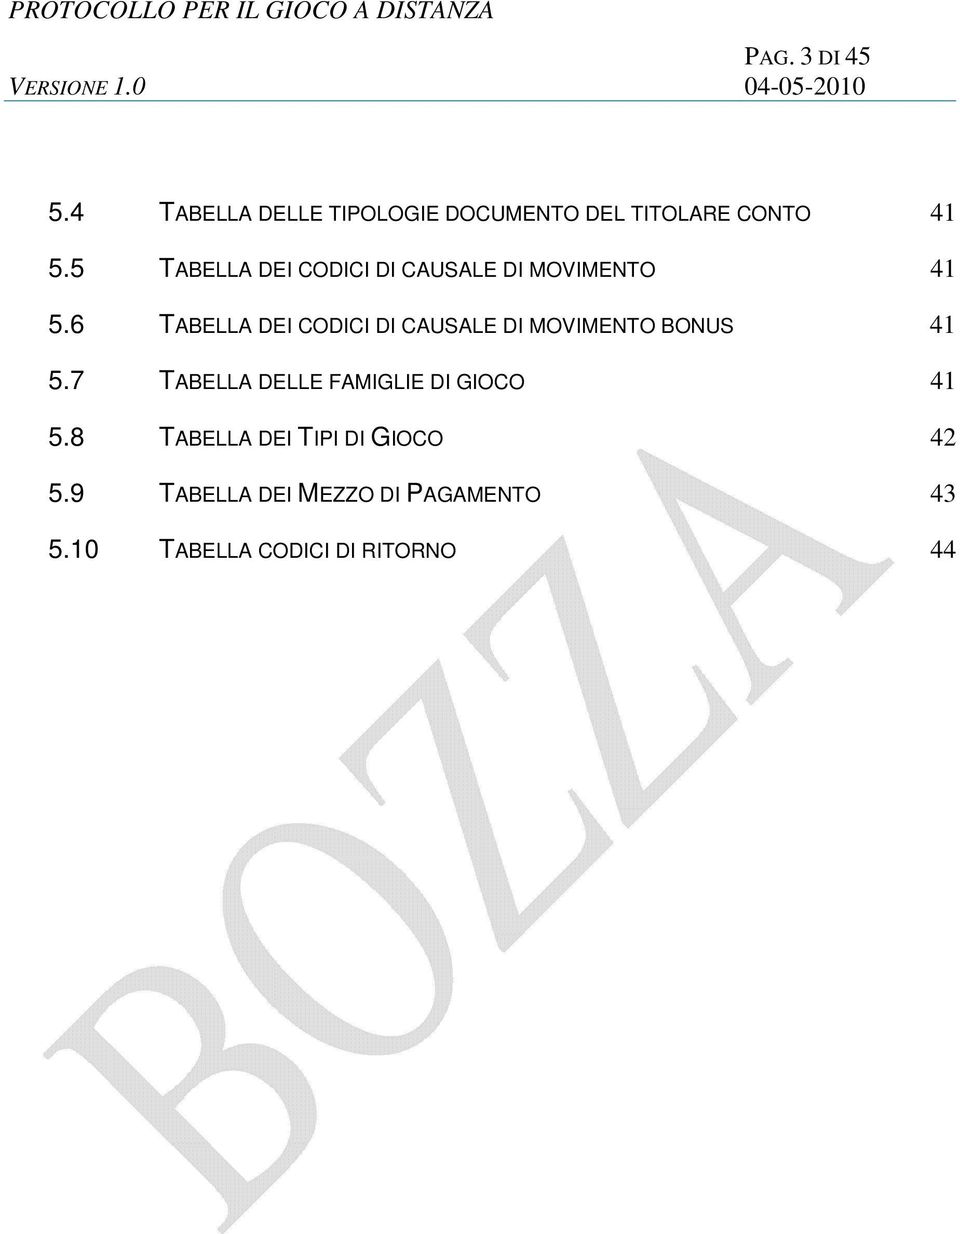 6 TABELLA DEI CODICI DI CAUSALE DI MOVIMENTO BONUS 41 5.